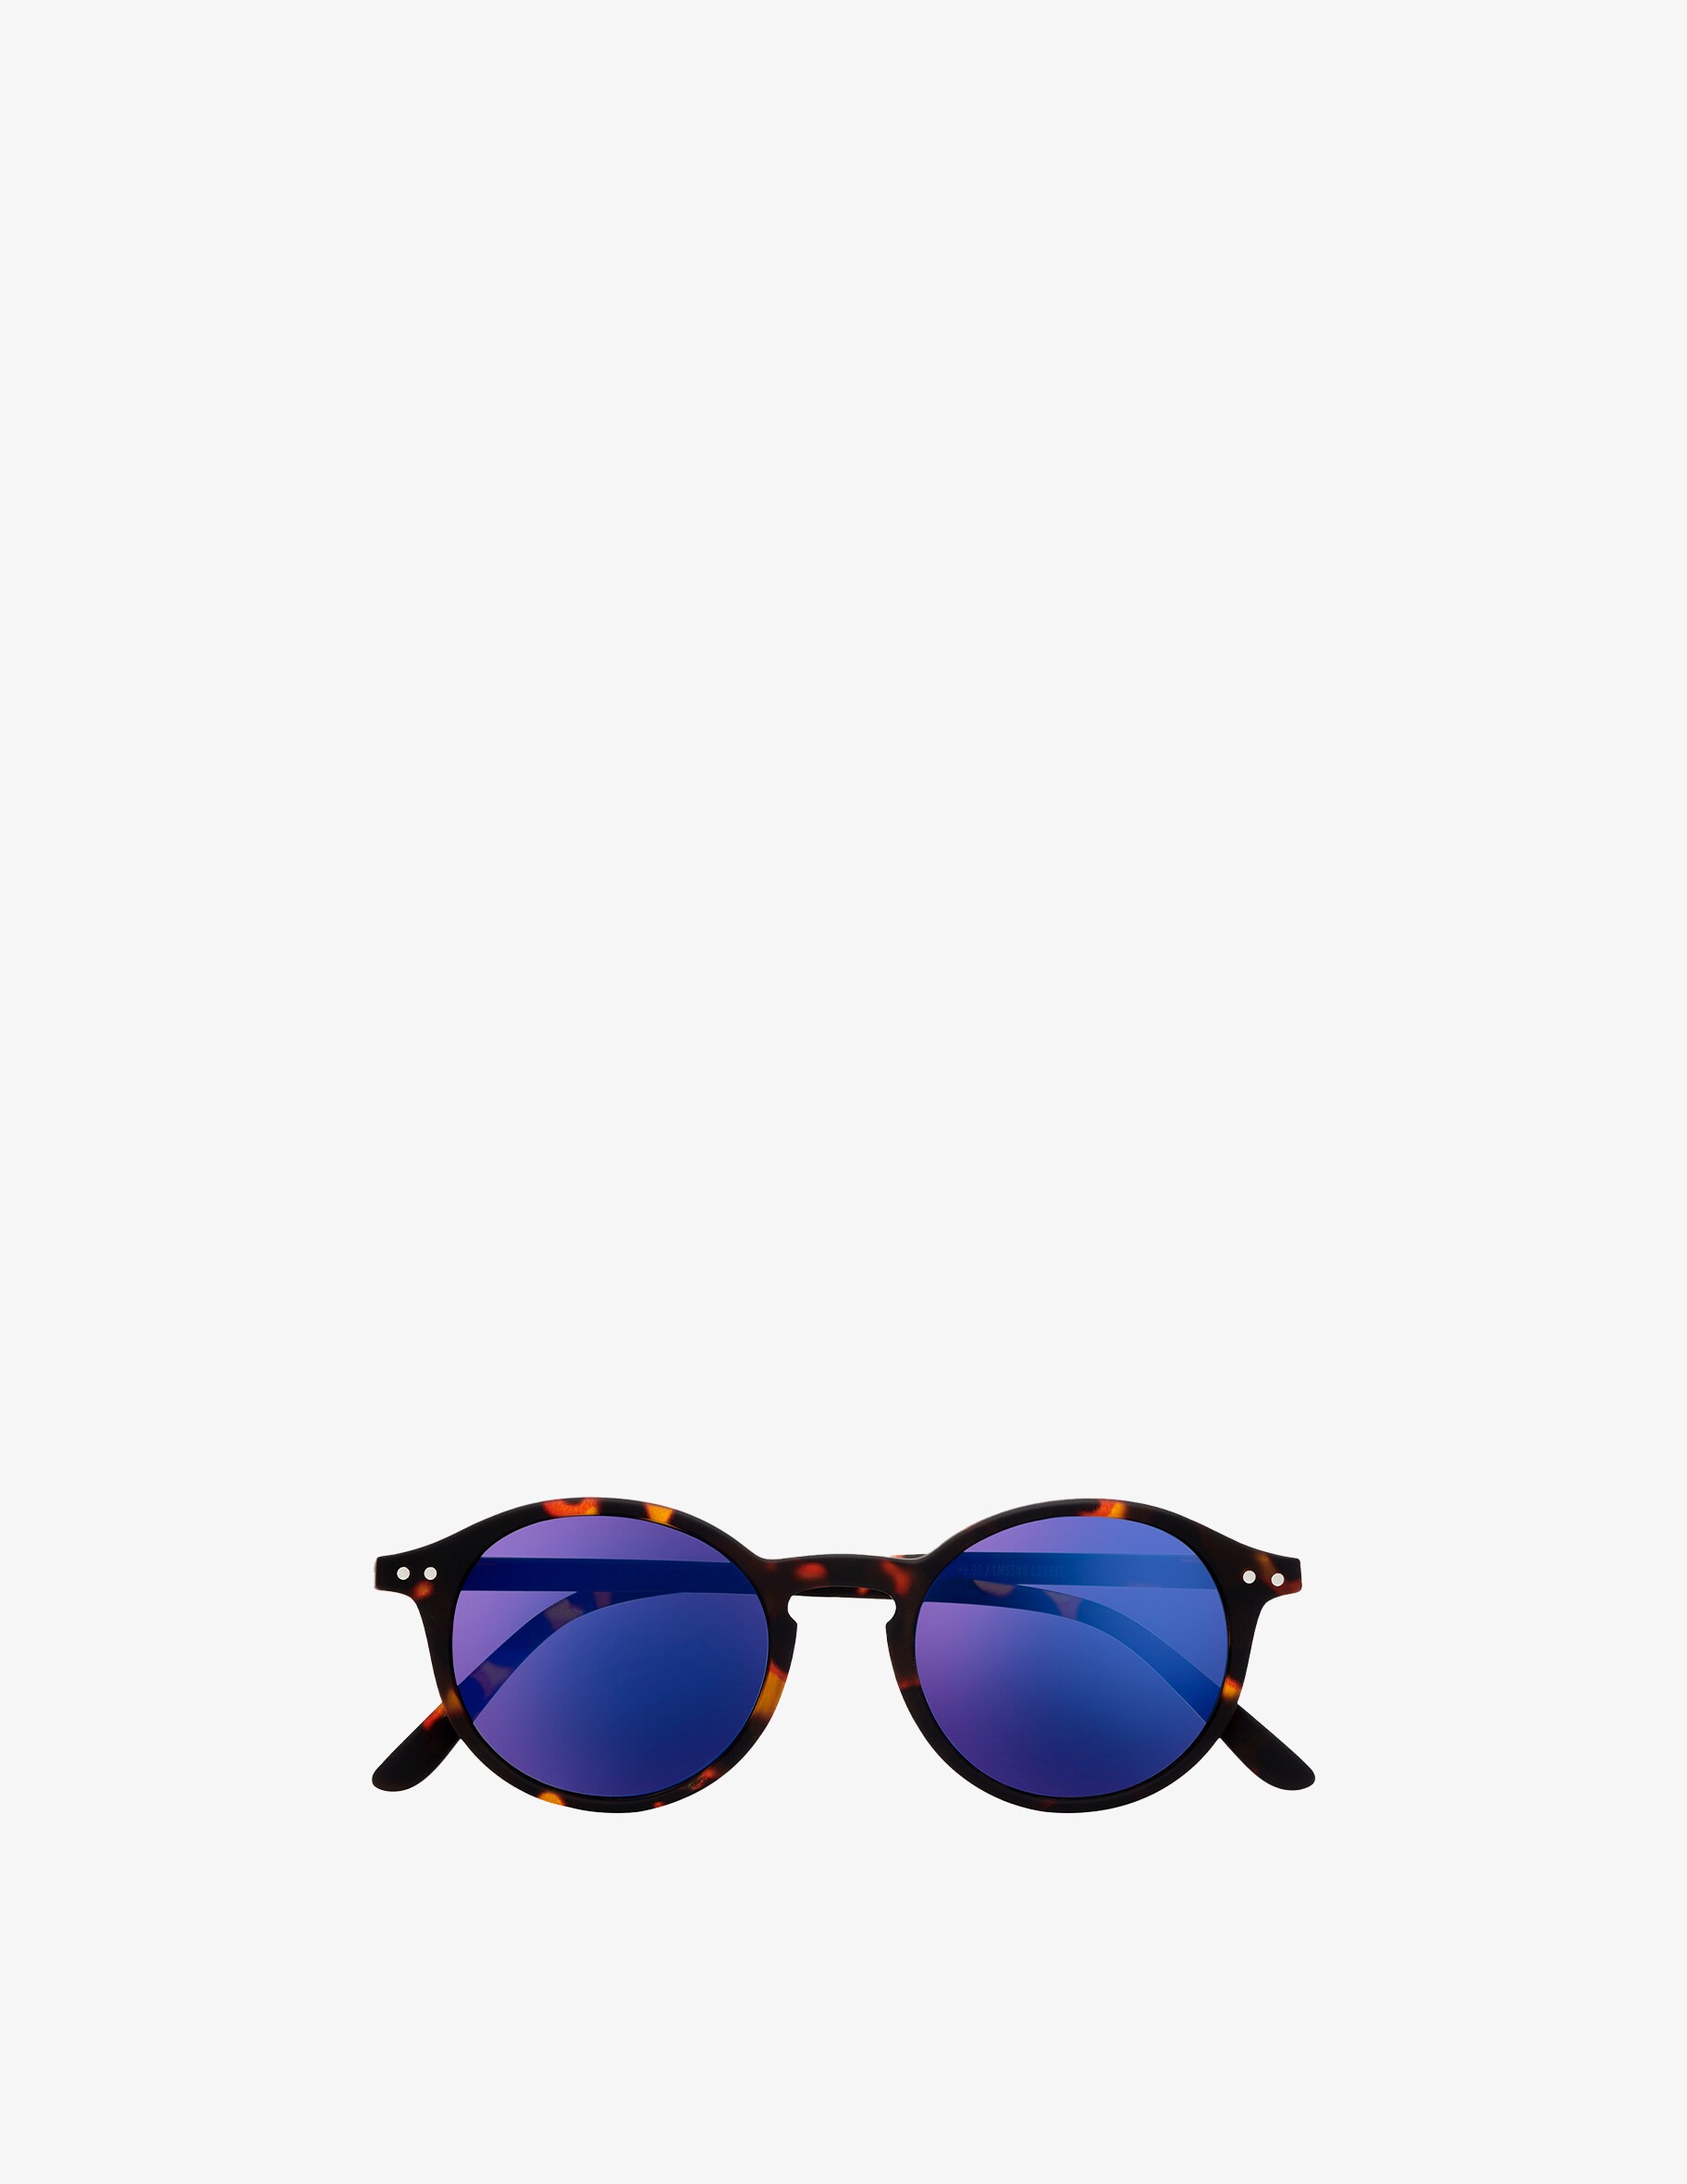 цена Солнцезащитные очки Модель #D с зеркальными линзами Izipizi, цвет Tortoise